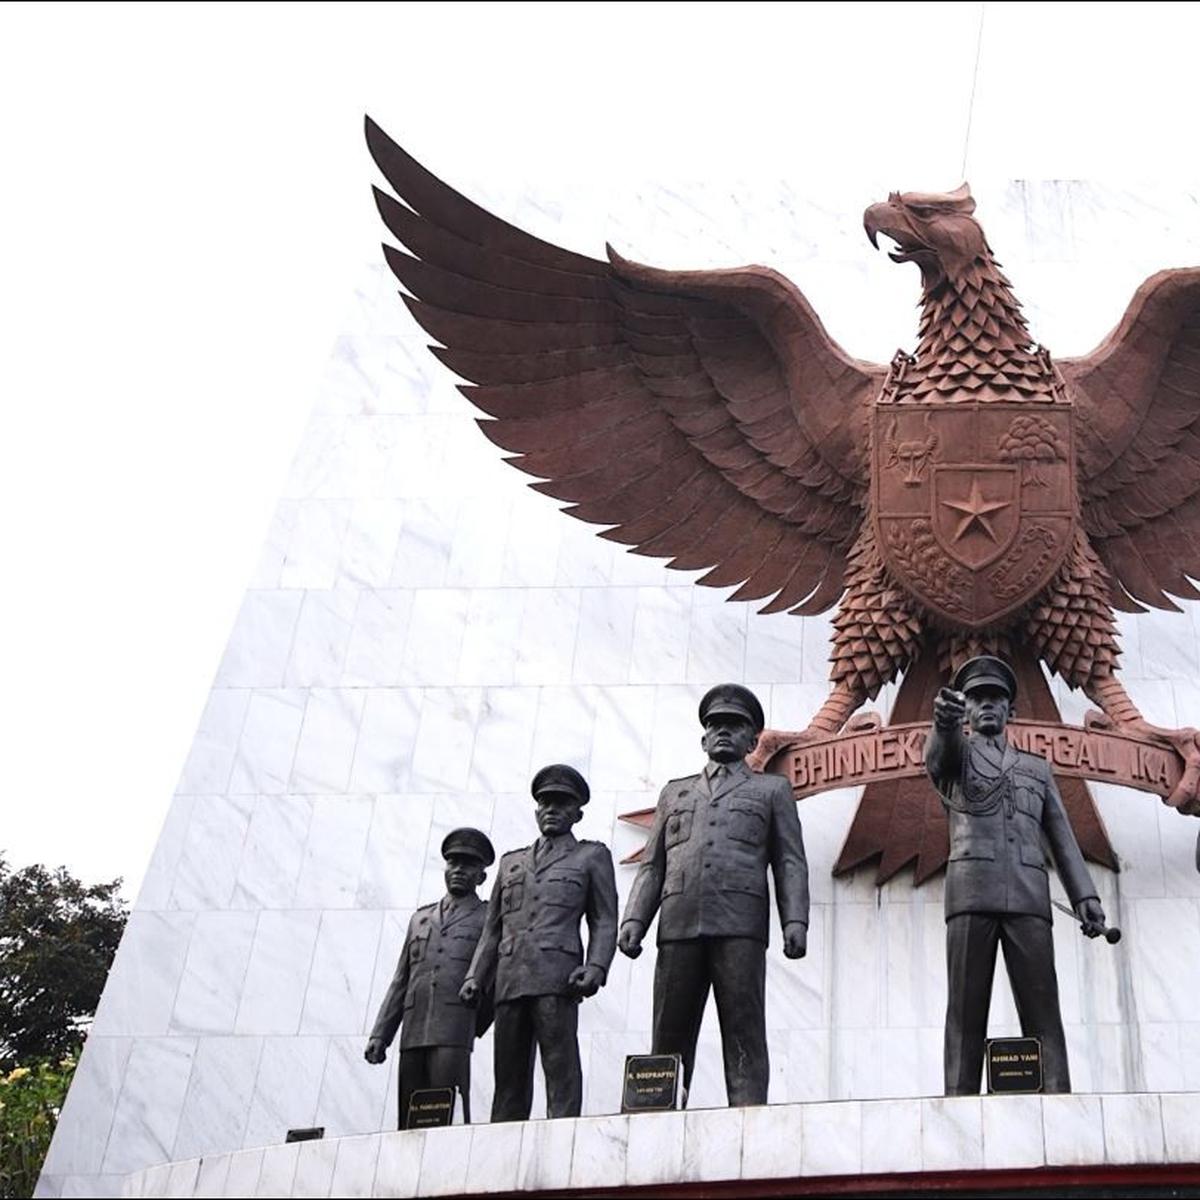 Pembukaan uud nri tahun 1945 memiliki arti dan makna penting bagi kehidupan negara dan bangsa indonesia karena